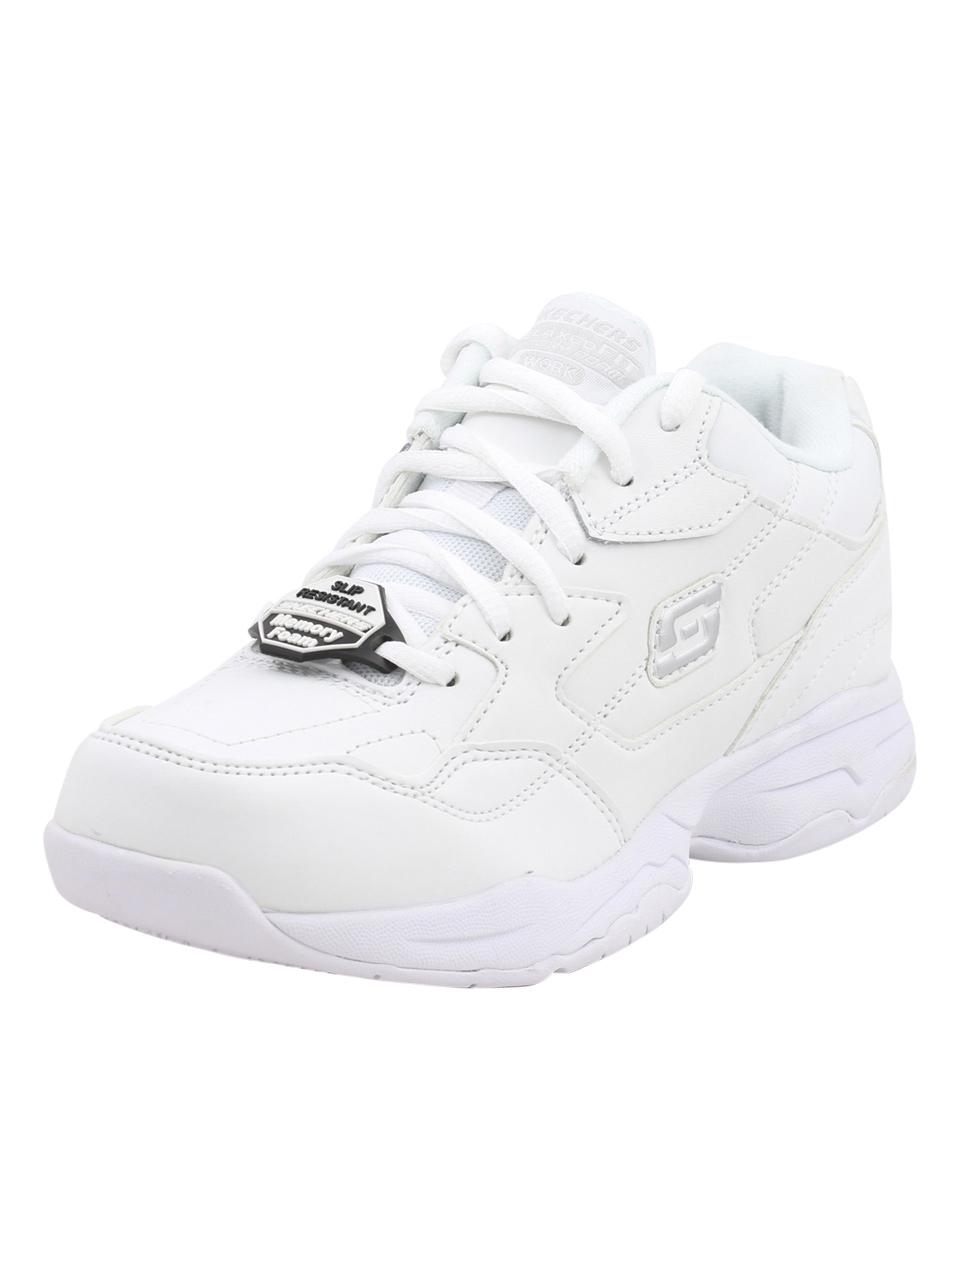 Skechers Work Women's Felton Albie Memory Foam Slip Resistant Sneakers Shoes - White - 7.5 B(M) US